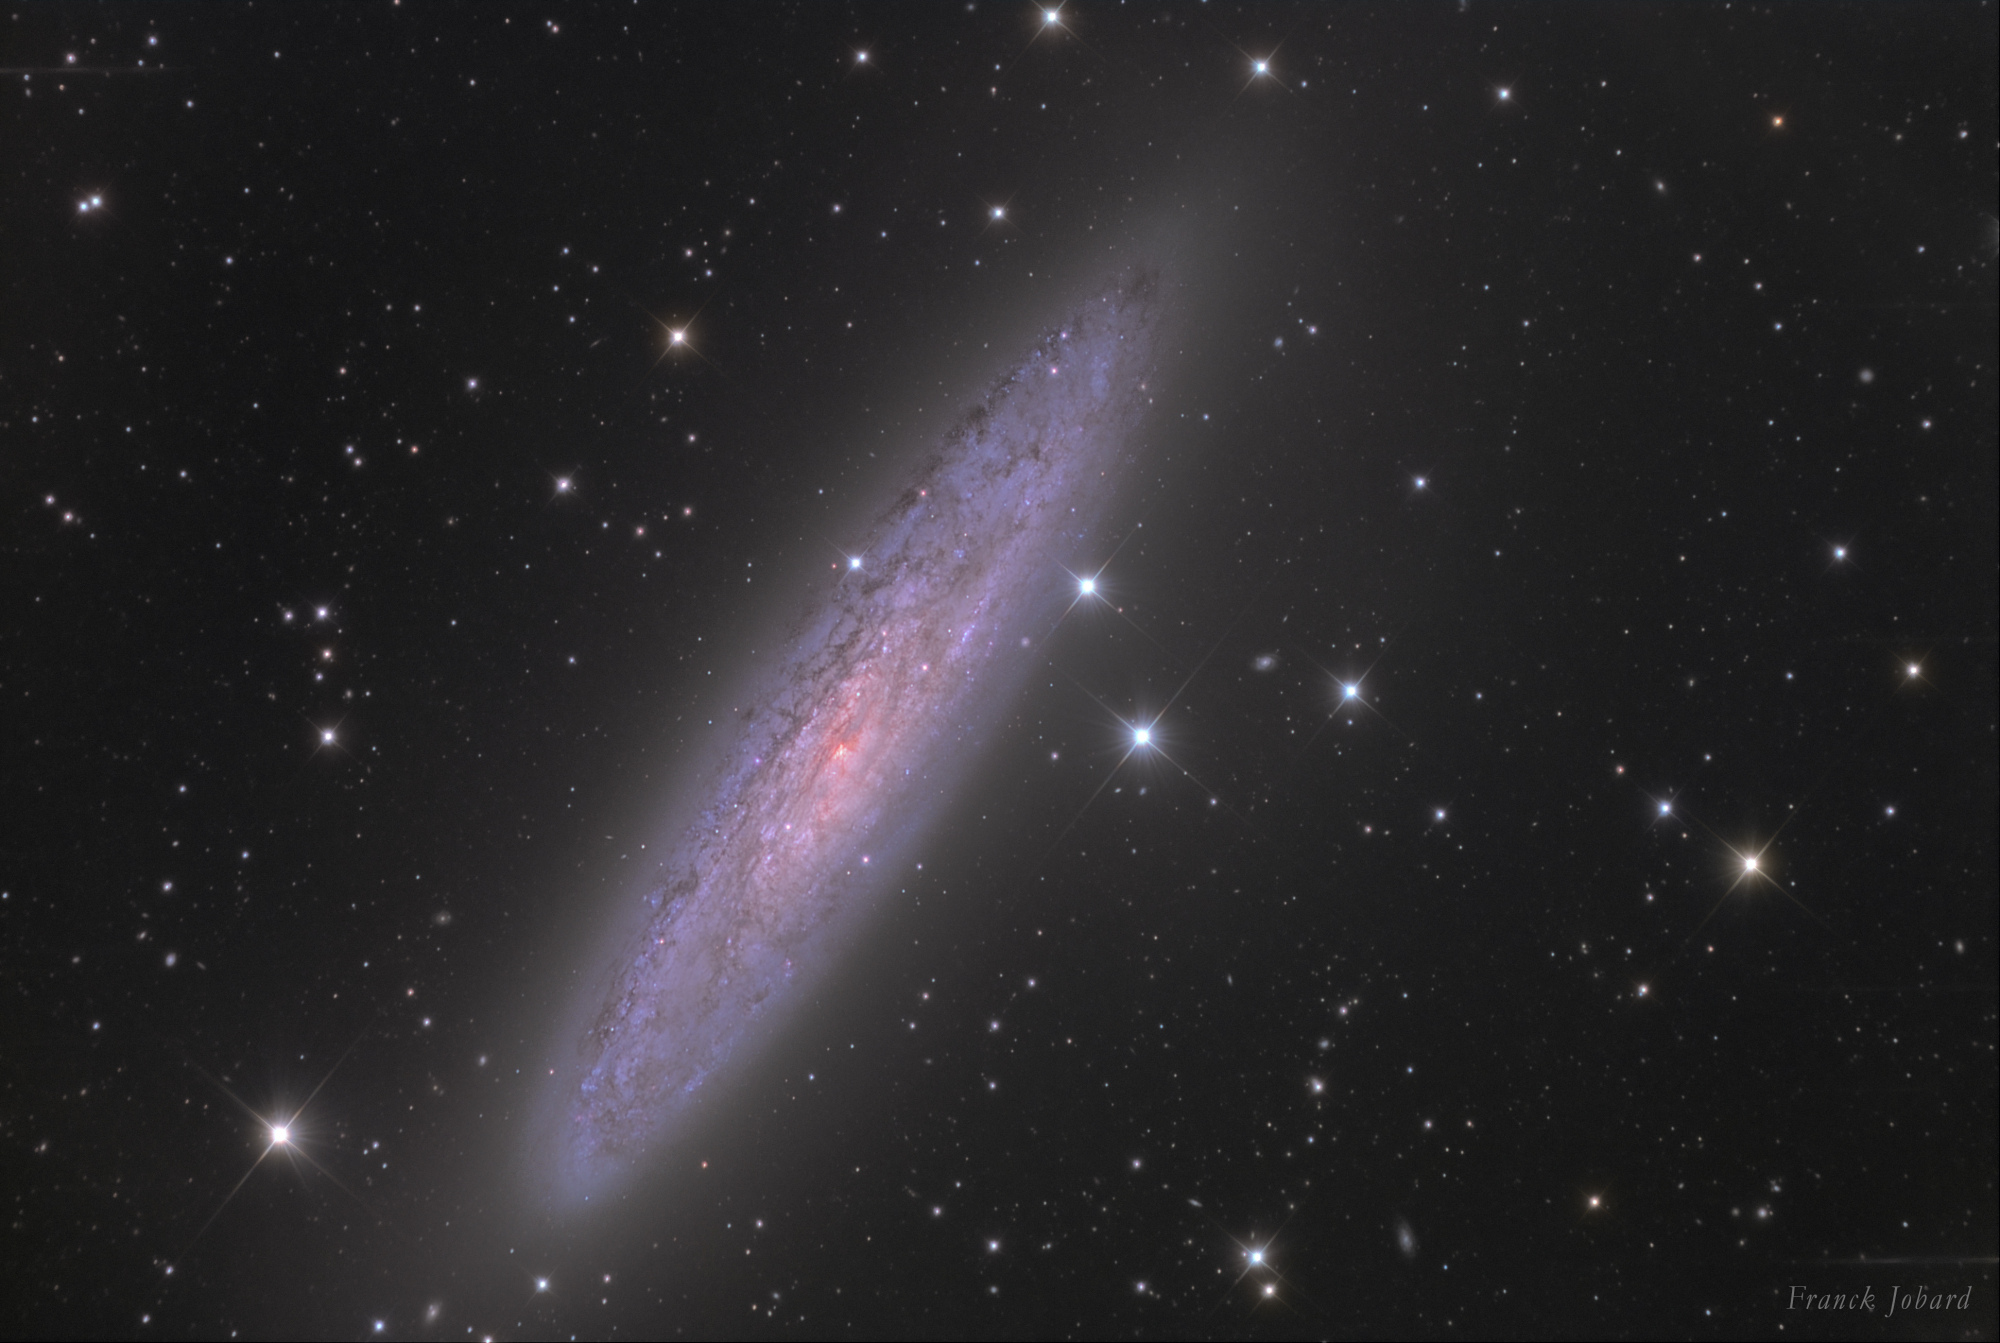 NGC253-Franck_Jobard-full.thumb.jpg.5504ba1ec685867ad8e587cf3cd41854.jpg